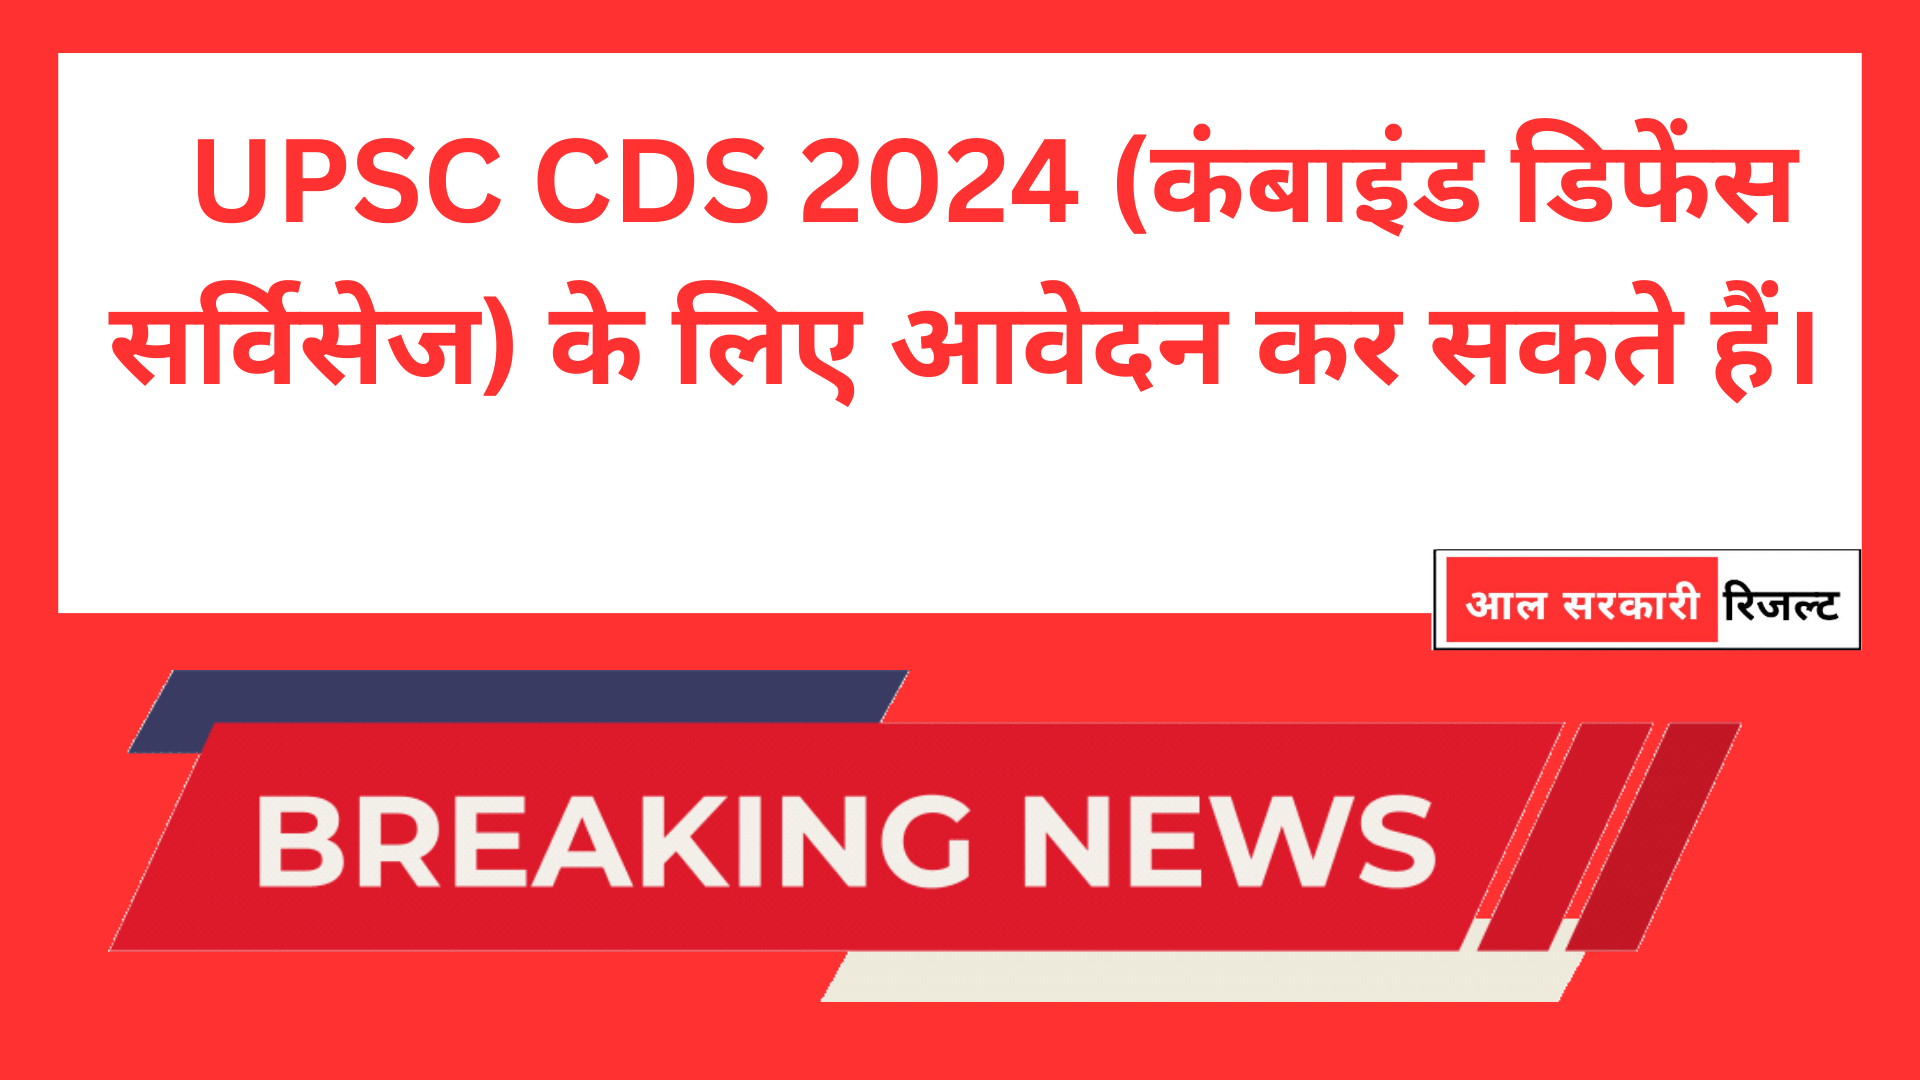 UPSC CDS 2024 (कंबाइंड डिफेंस सर्विसेज) के लिए आवेदन कर सकते हैं।